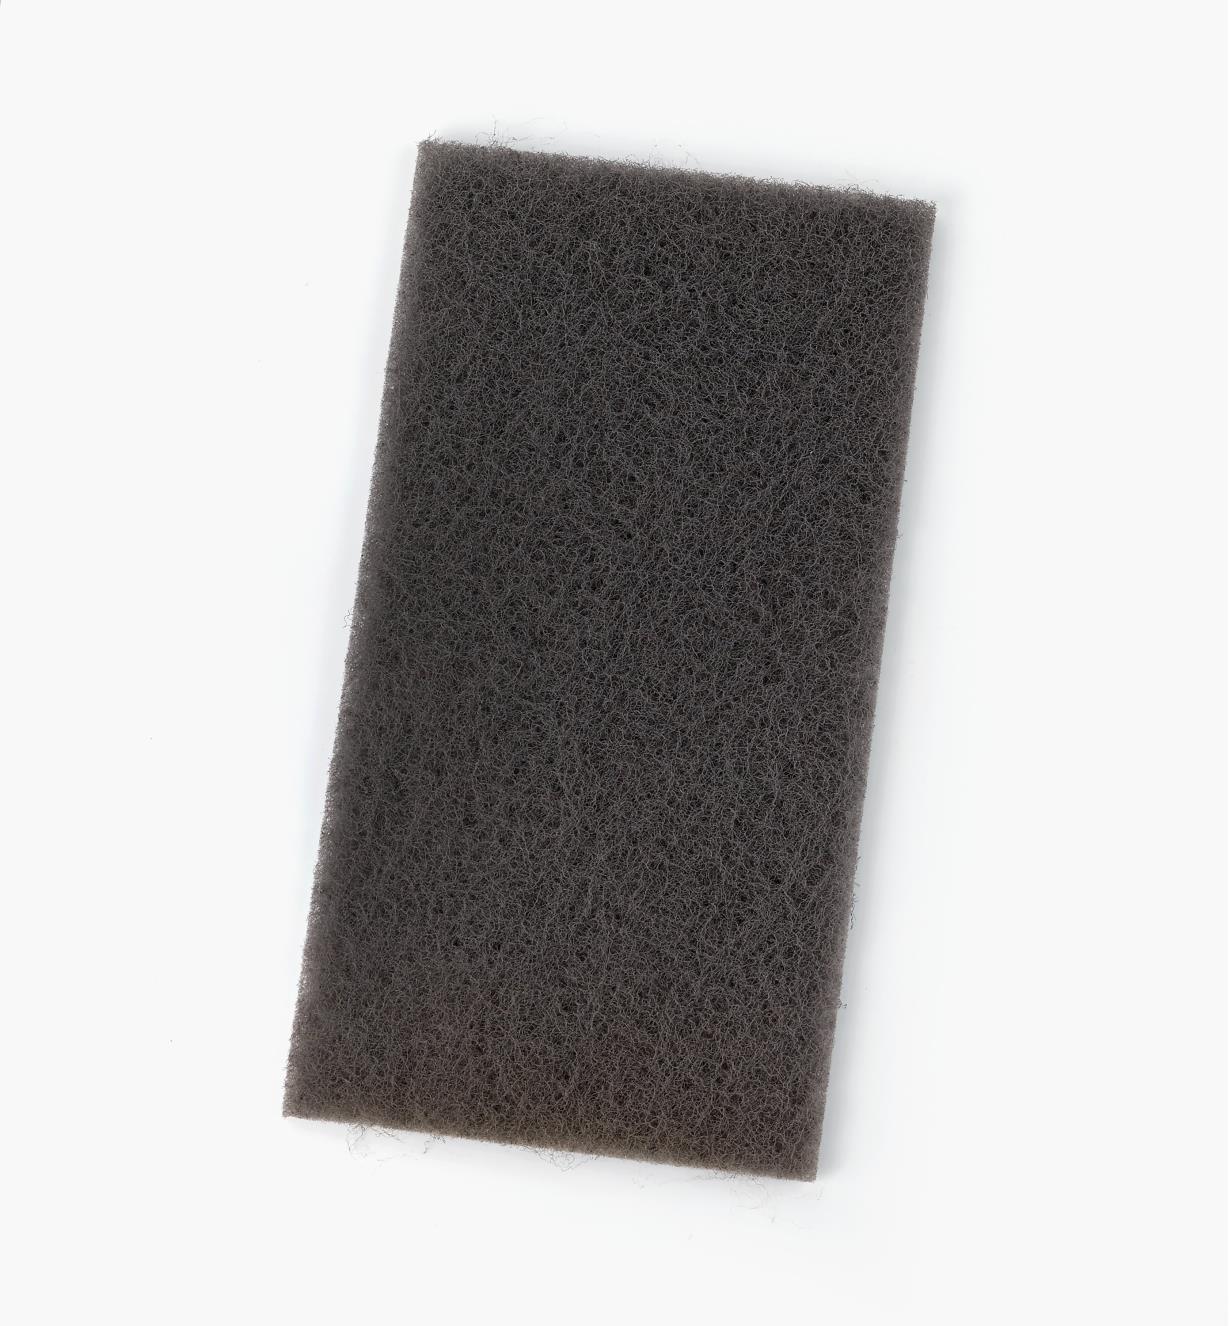 08K0312 - 1500x Mirlon Total Abrasive Pad, each